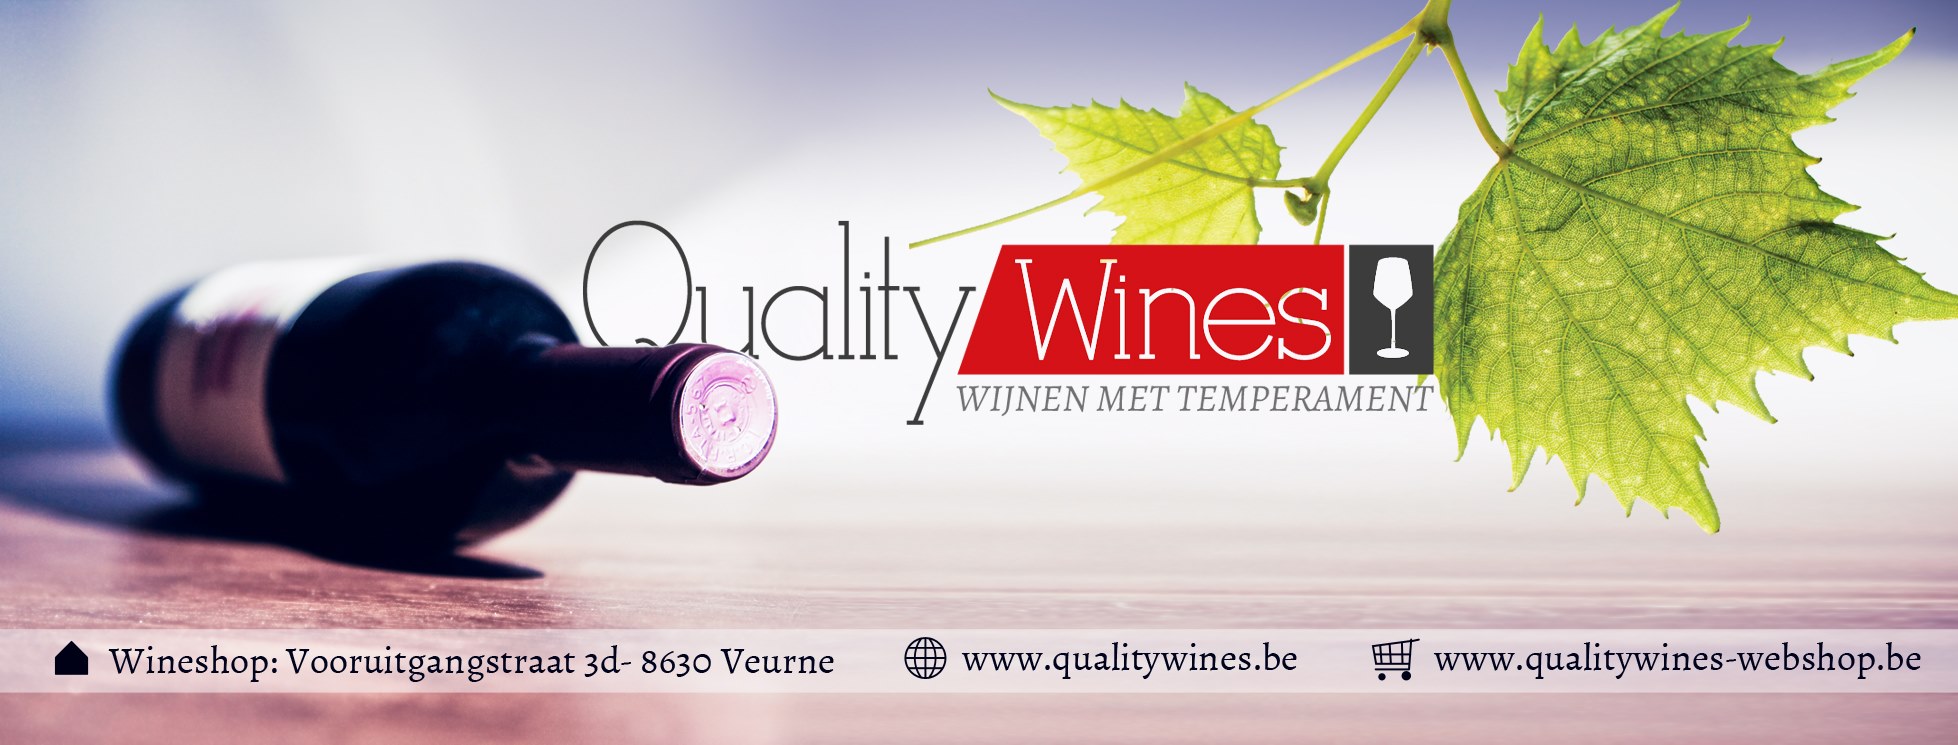 Quality-Wines-Veurne-Wijnshop-1